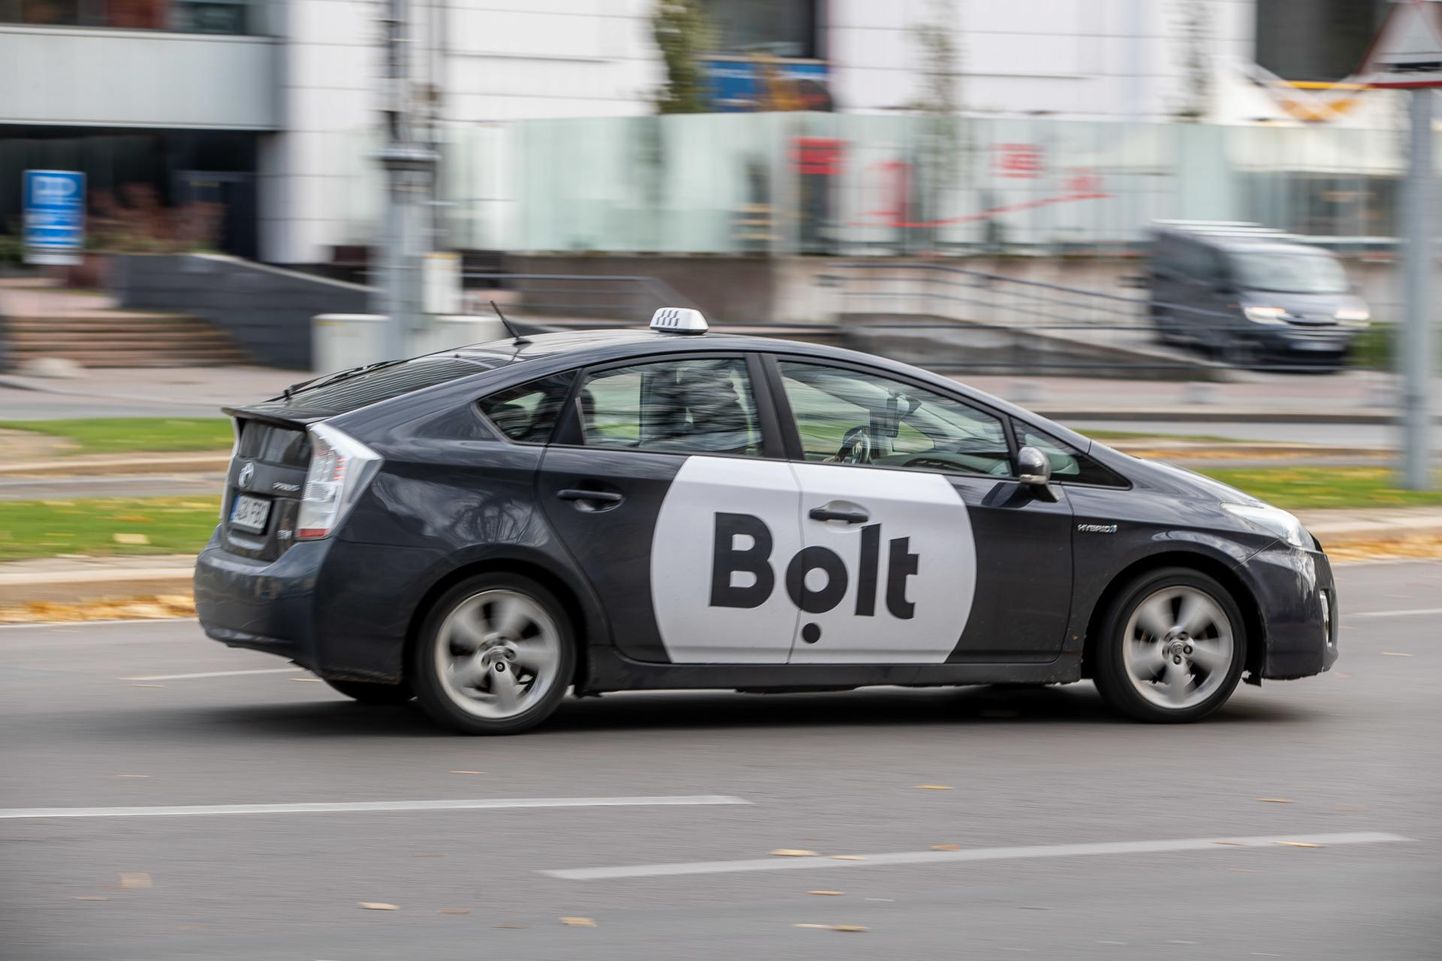 Среди технологических предприятий Эстонии самая высокая стоимость у Bolt – 7,4 миллиарда евро.